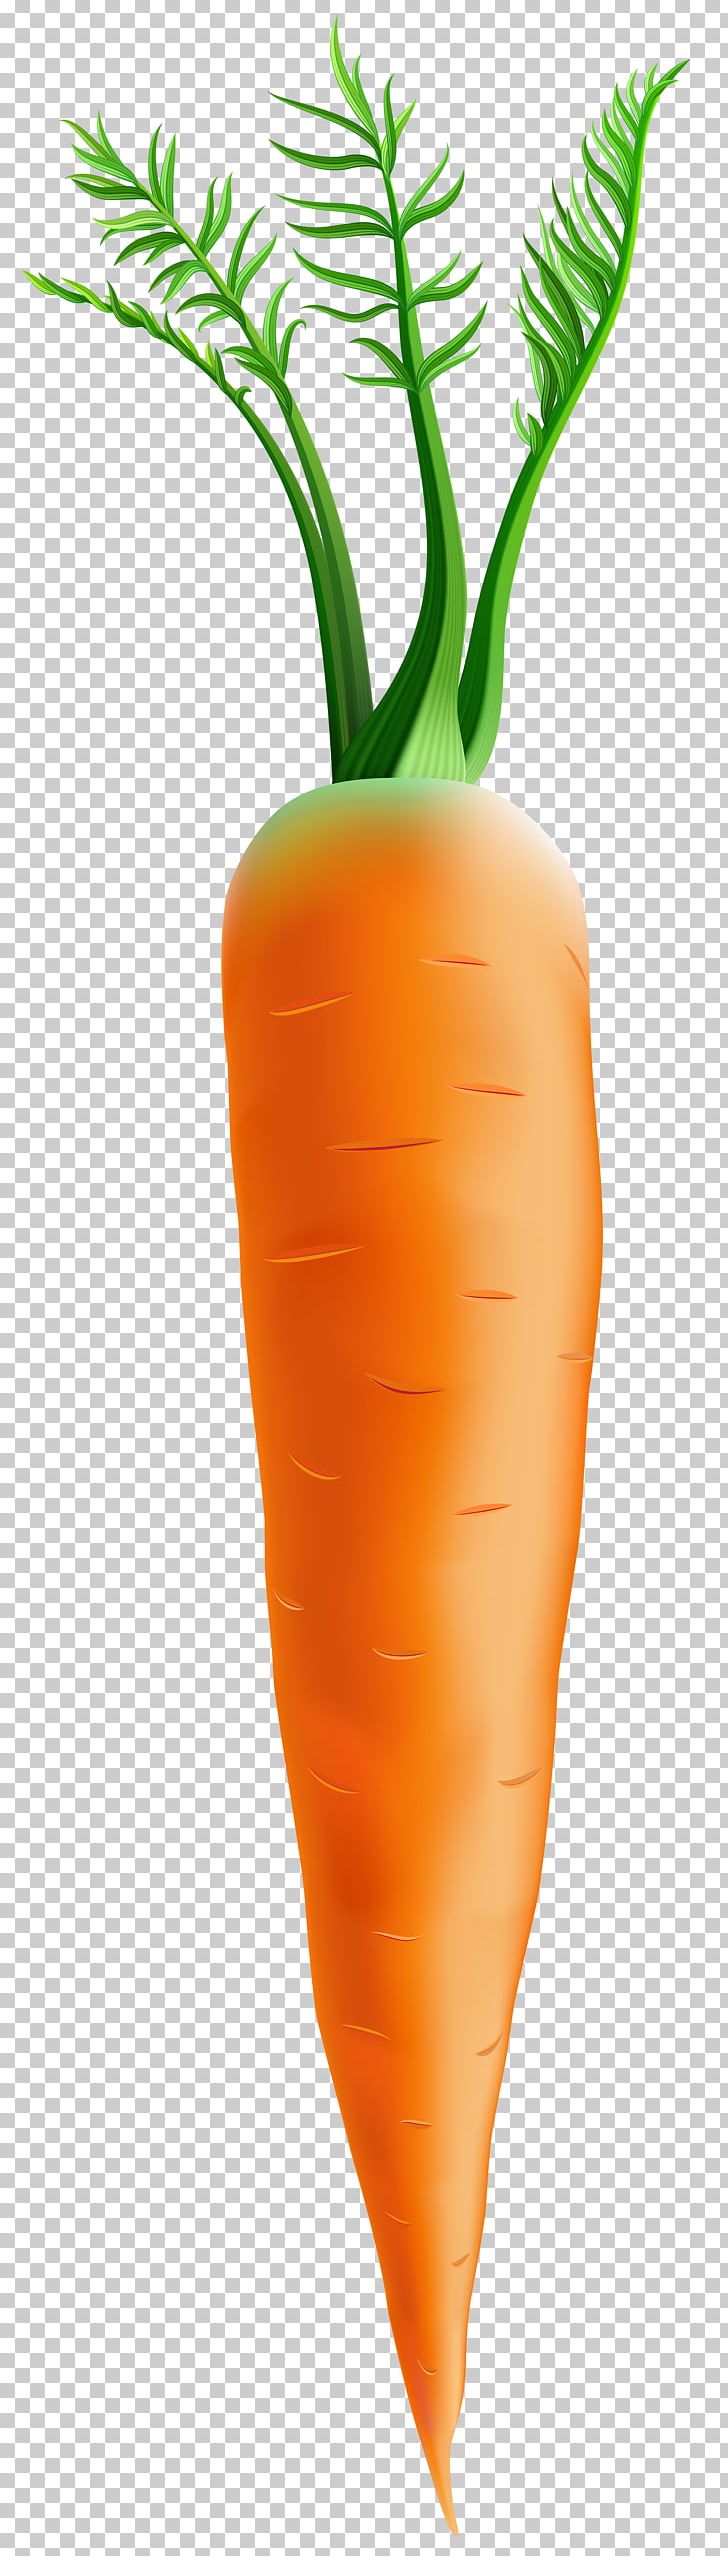 Carrot Orange Flowerpot PNG, Clipart, Carrot, Carrot Orange, Clipart, Clip Art, Flowerpot Free PNG Download